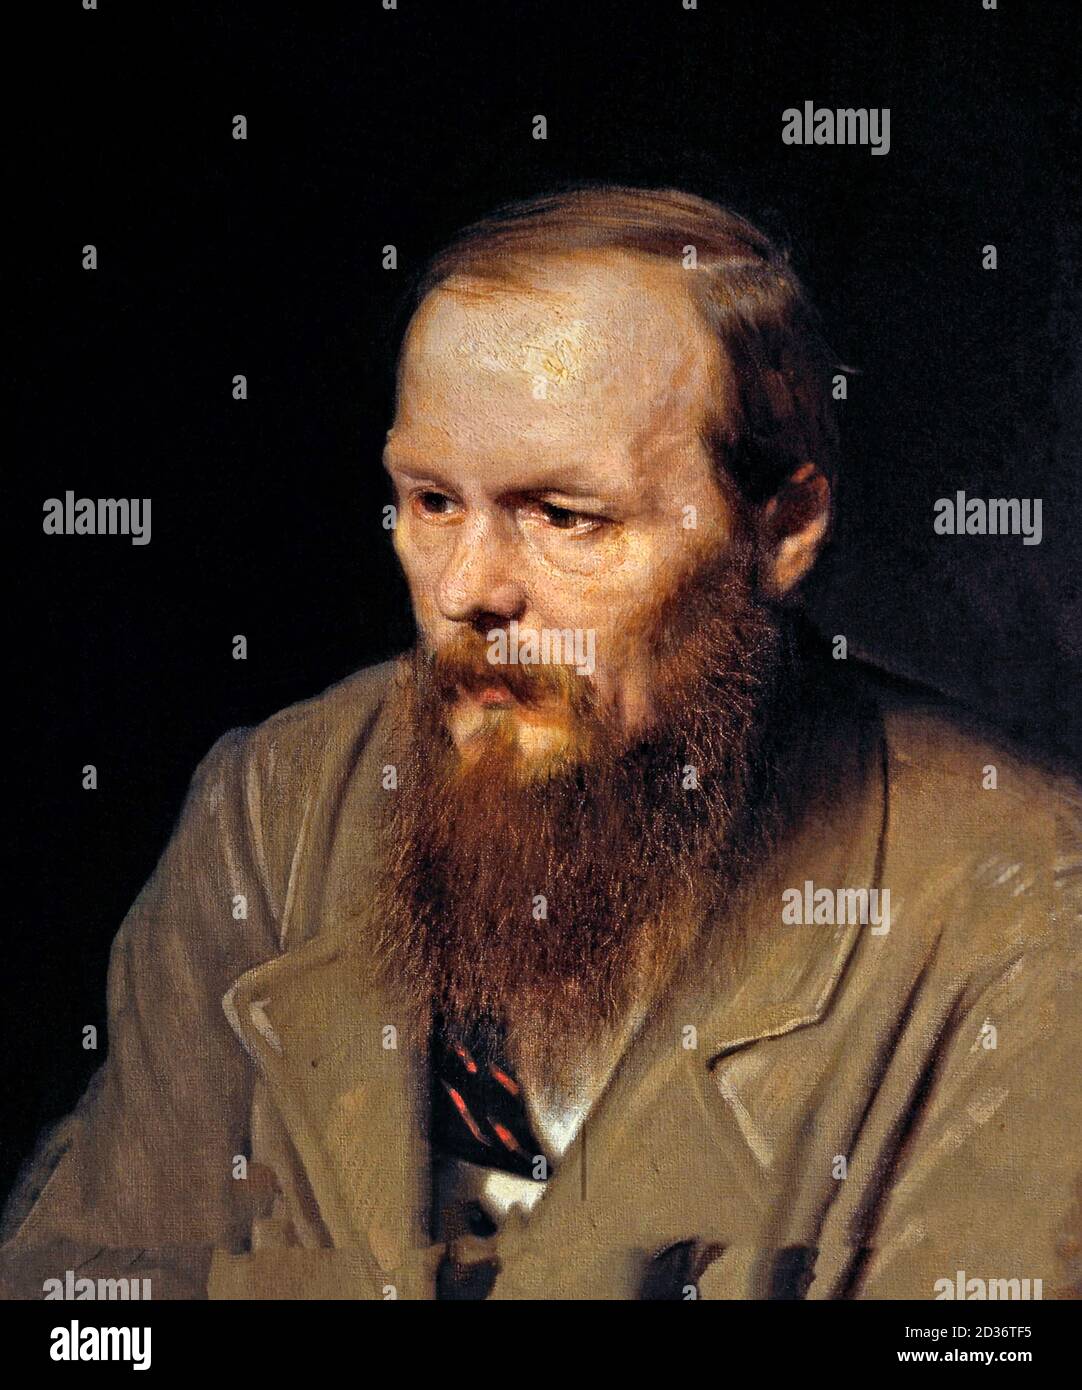 Dostoevskij. Ritratto dello scrittore russo Fyodor Mikhailovich Dostoevsky (1821-1881) di Vasily Perov, olio su tela, 1872. Fedor Dostoyevsky. Foto Stock